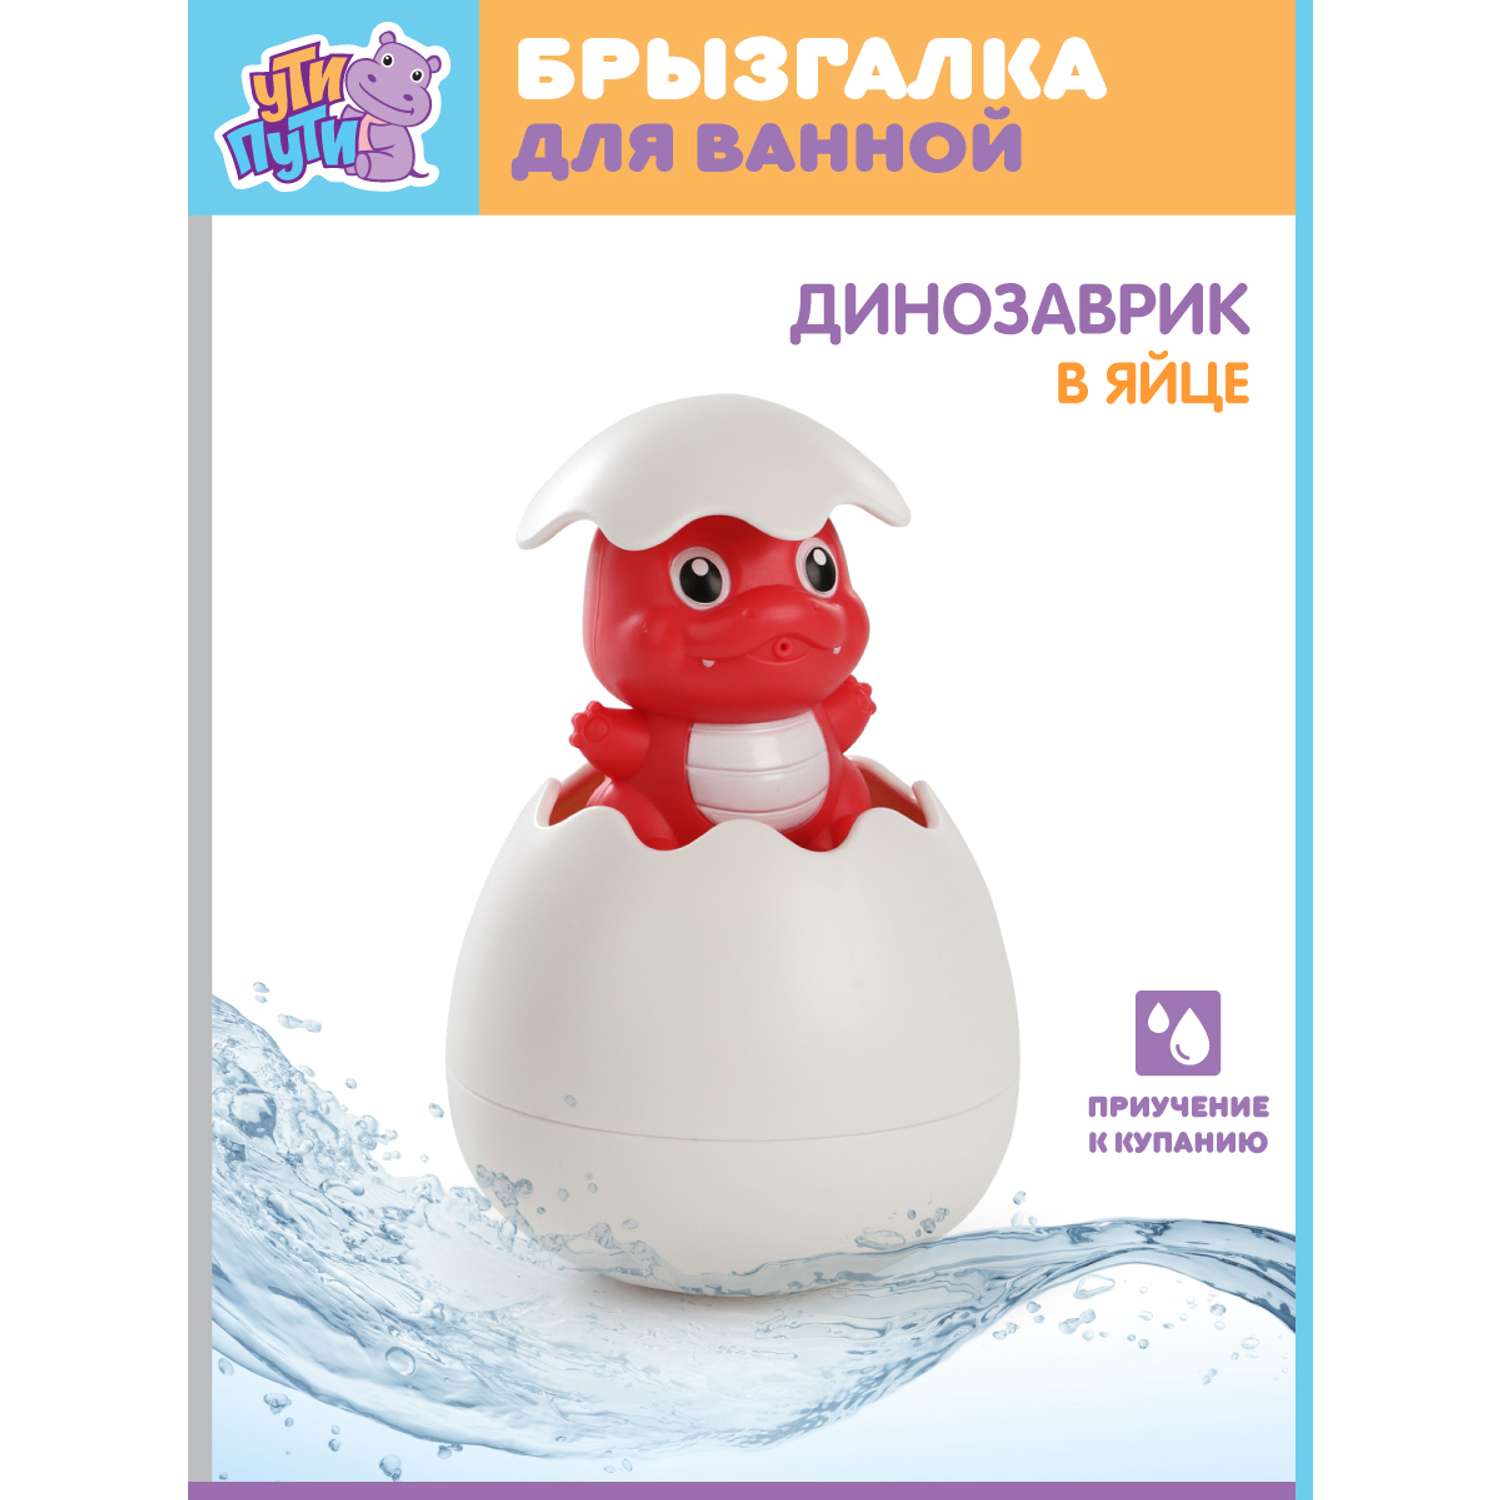 Игрушка для ванны Ути Пути Динозаврик в яйце - фото 2